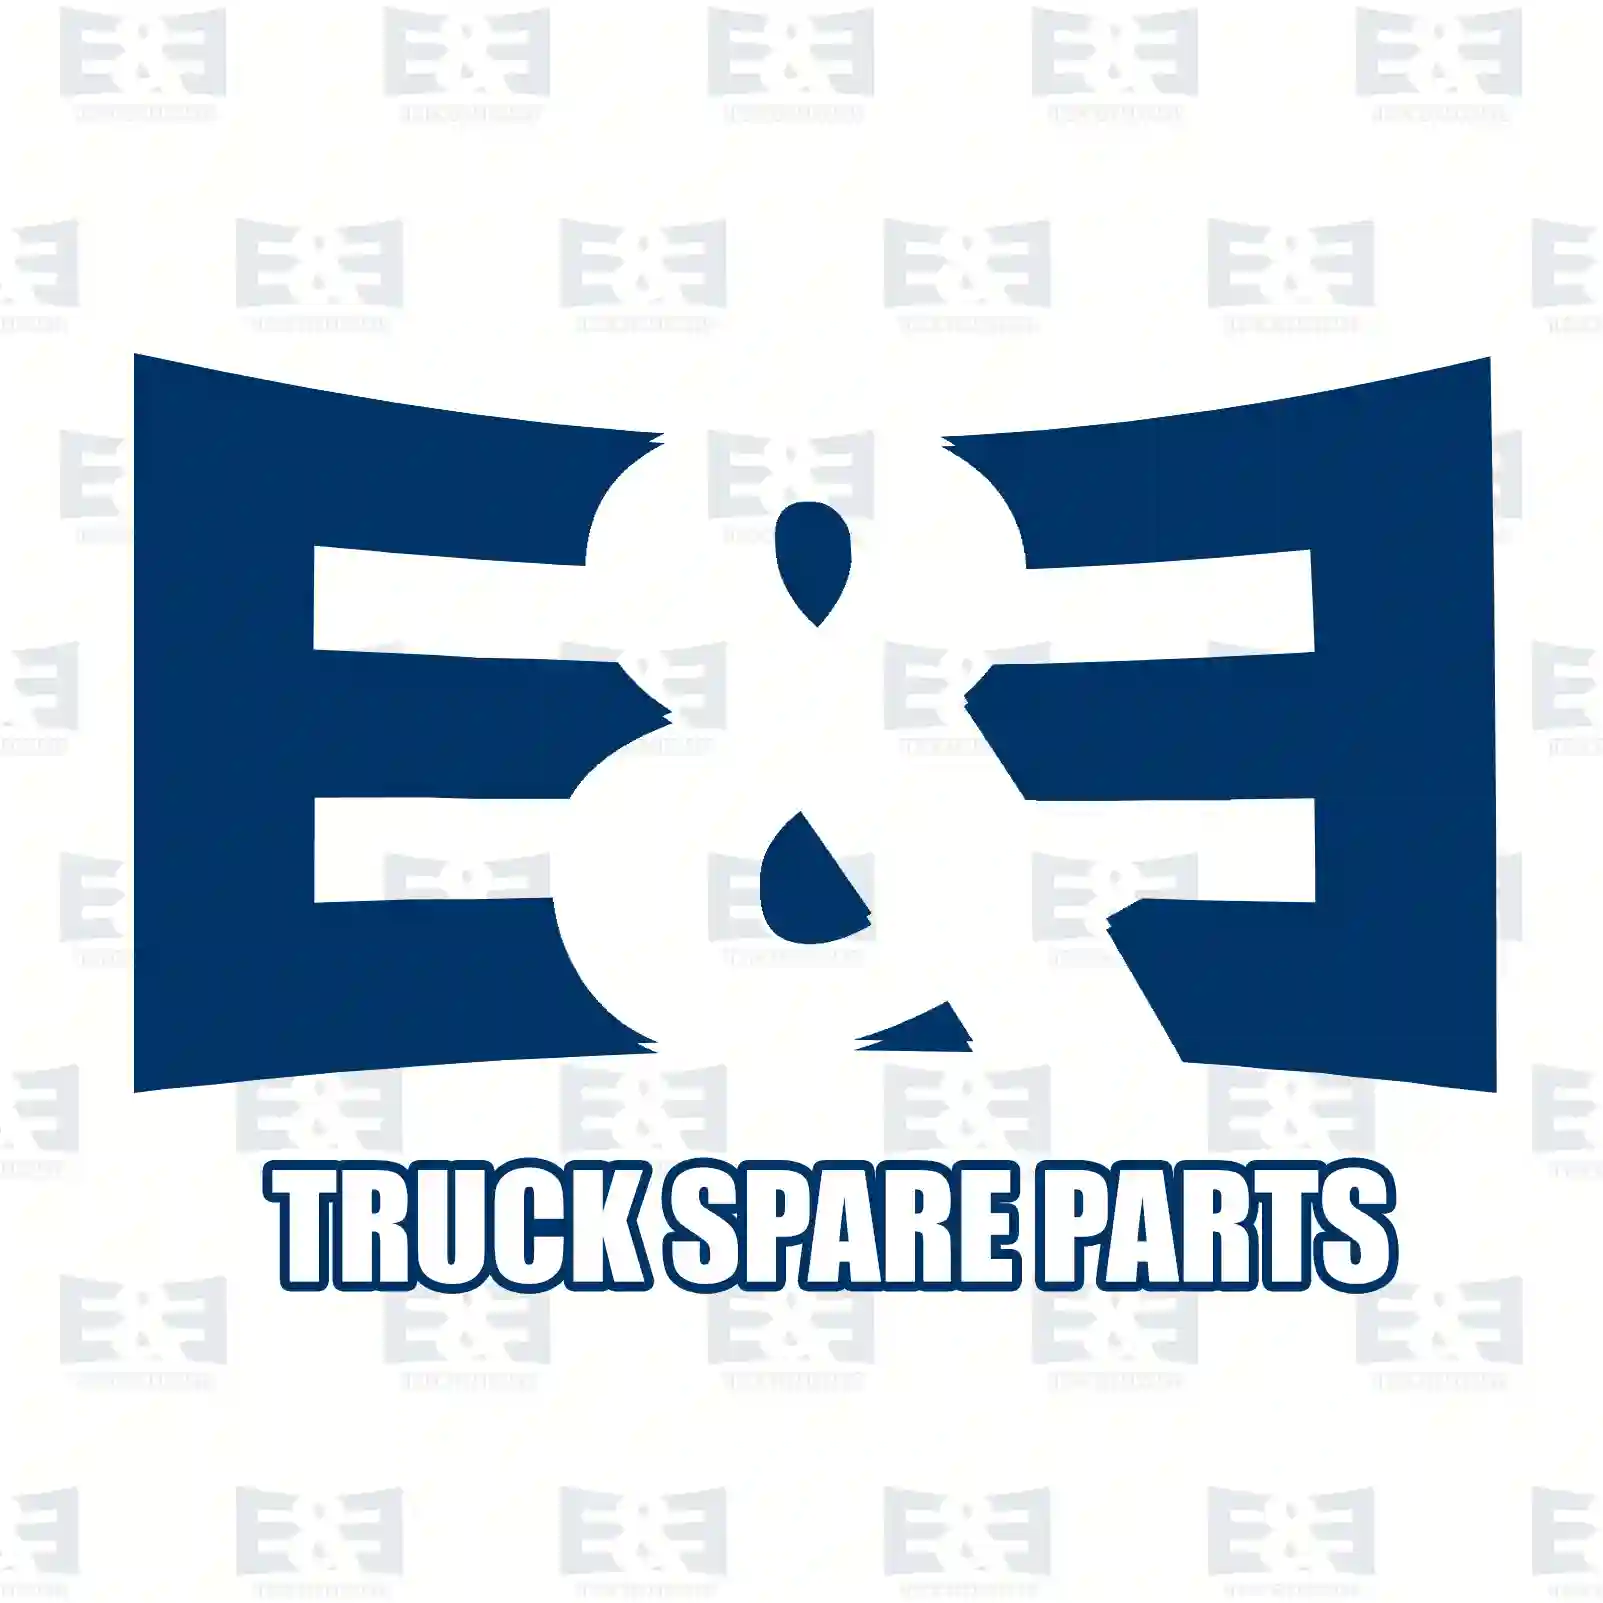 Connecting rod, compressor, 2E2296759, 51541063007, 5154 ||  2E2296759 E&E Truck Spare Parts | Truck Spare Parts, Auotomotive Spare Parts Connecting rod, compressor, 2E2296759, 51541063007, 5154 ||  2E2296759 E&E Truck Spare Parts | Truck Spare Parts, Auotomotive Spare Parts